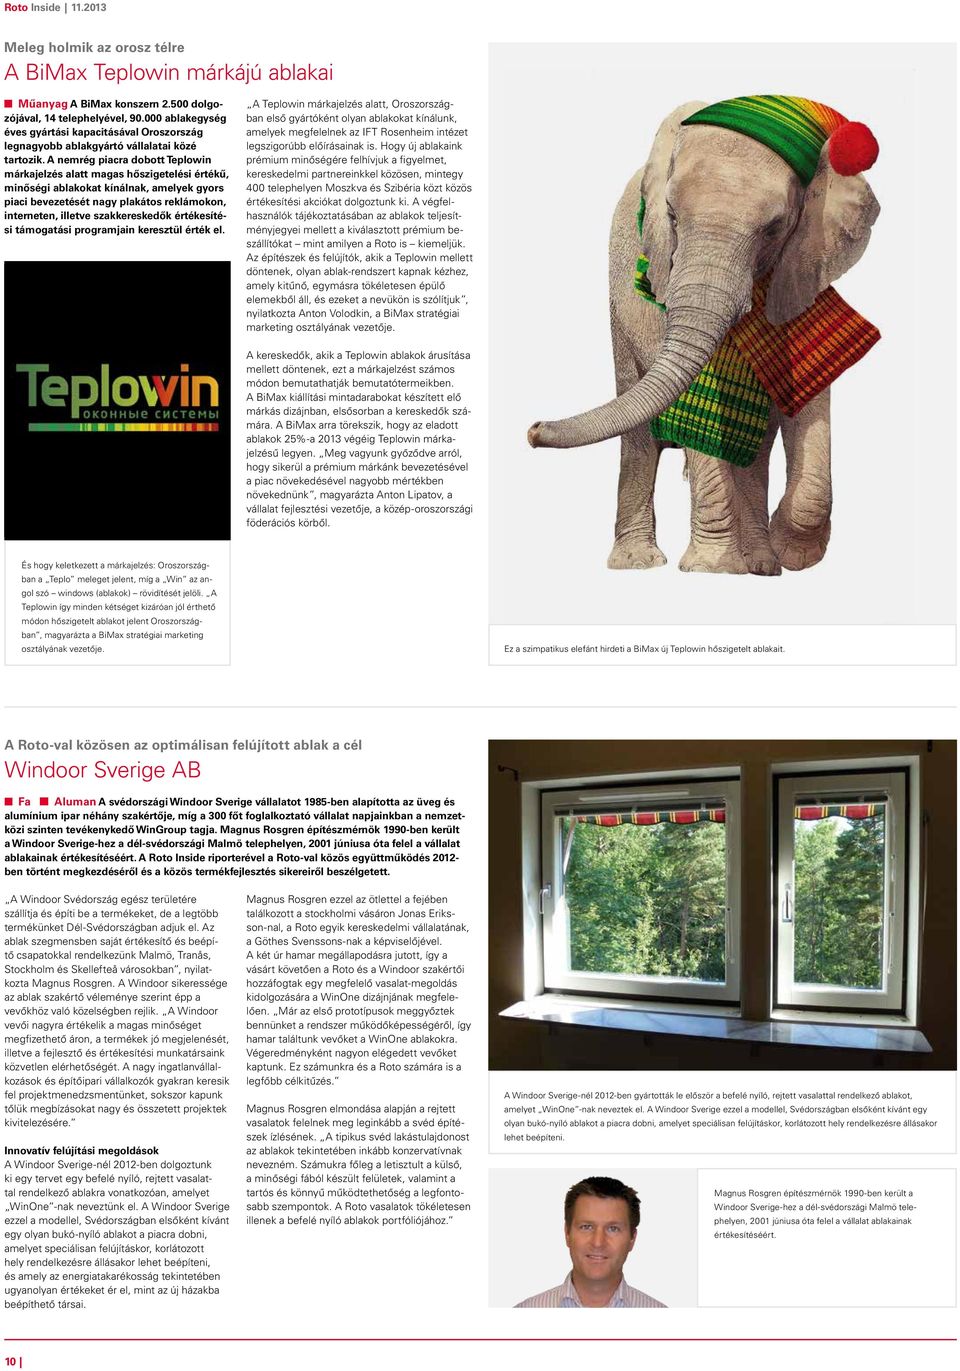 A nemrég piacra dobott Teplowin márkajelzés alatt magas hőszigetelési értékű, minőségi ablakokat kínálnak, amelyek gyors piaci bevezetését nagy plakátos reklámokon, interneten, illetve szakkereskedők